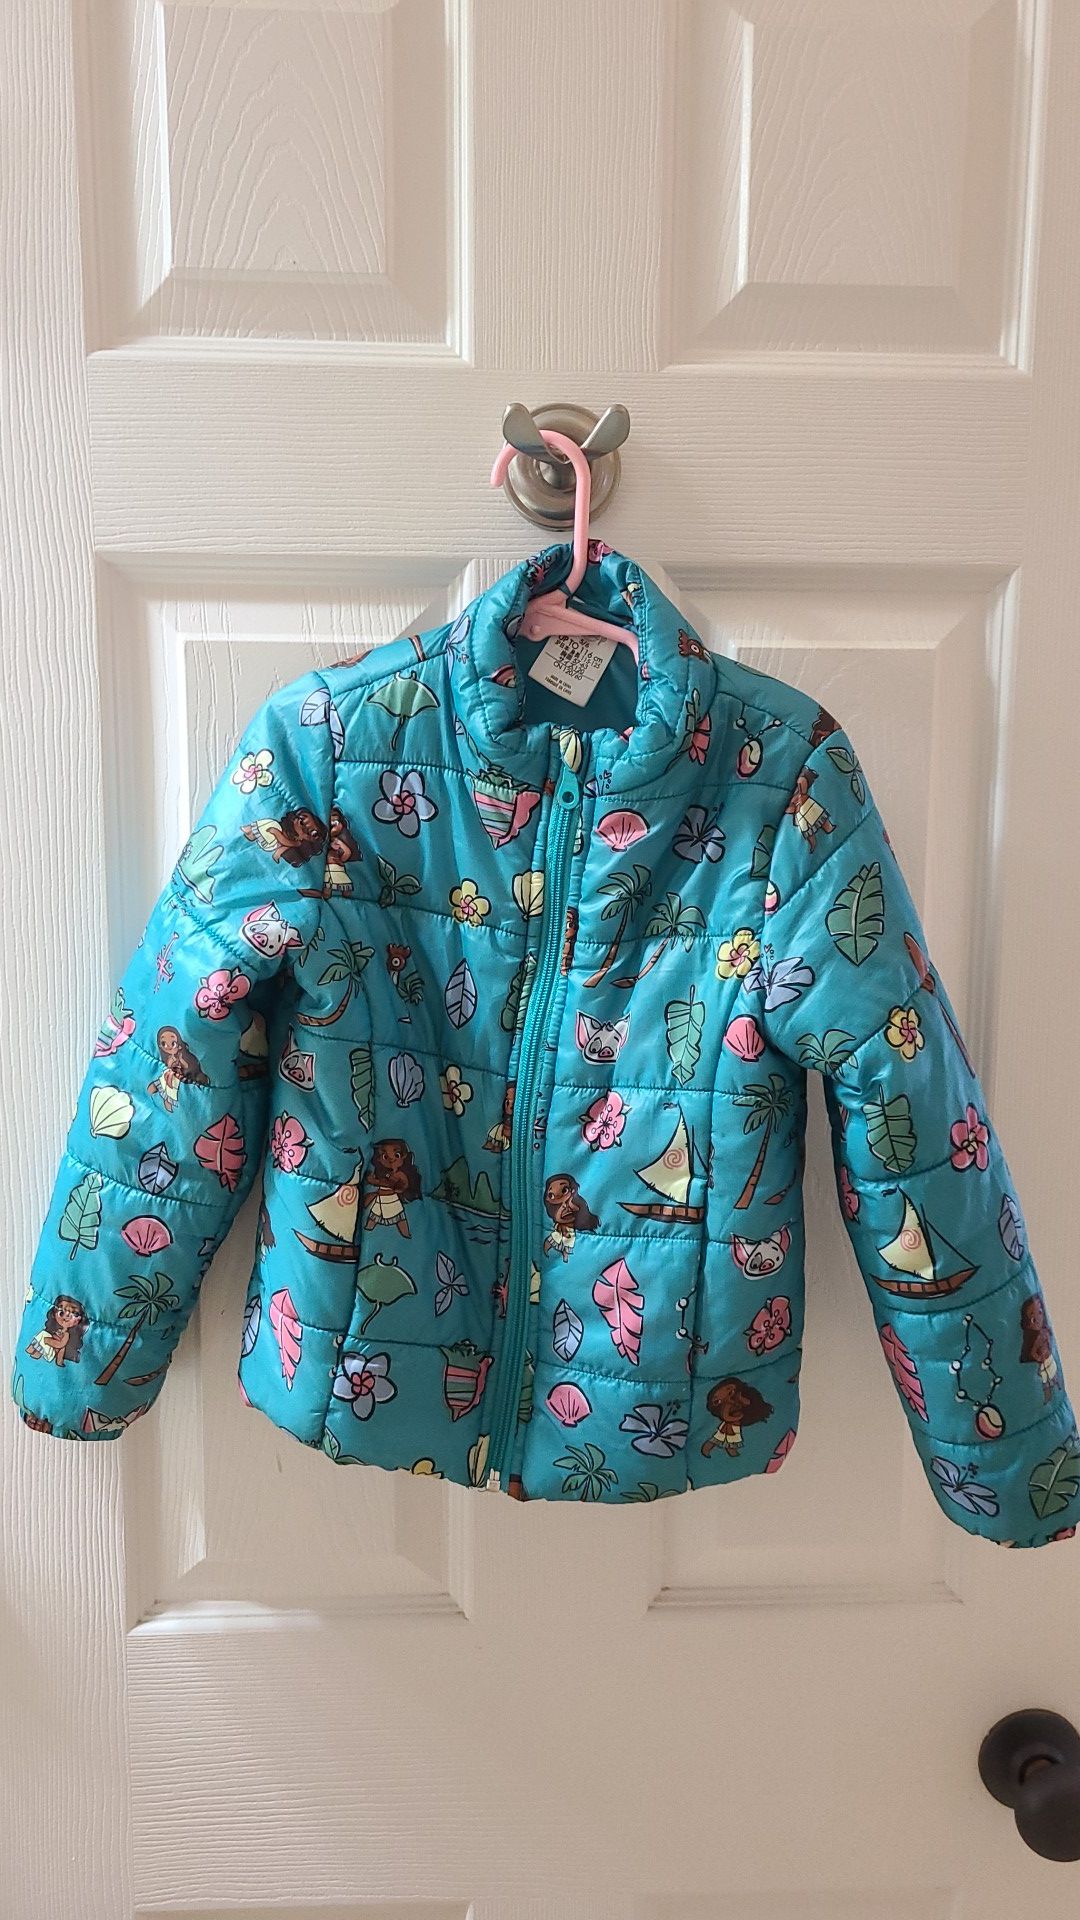 Disney Moana jacket